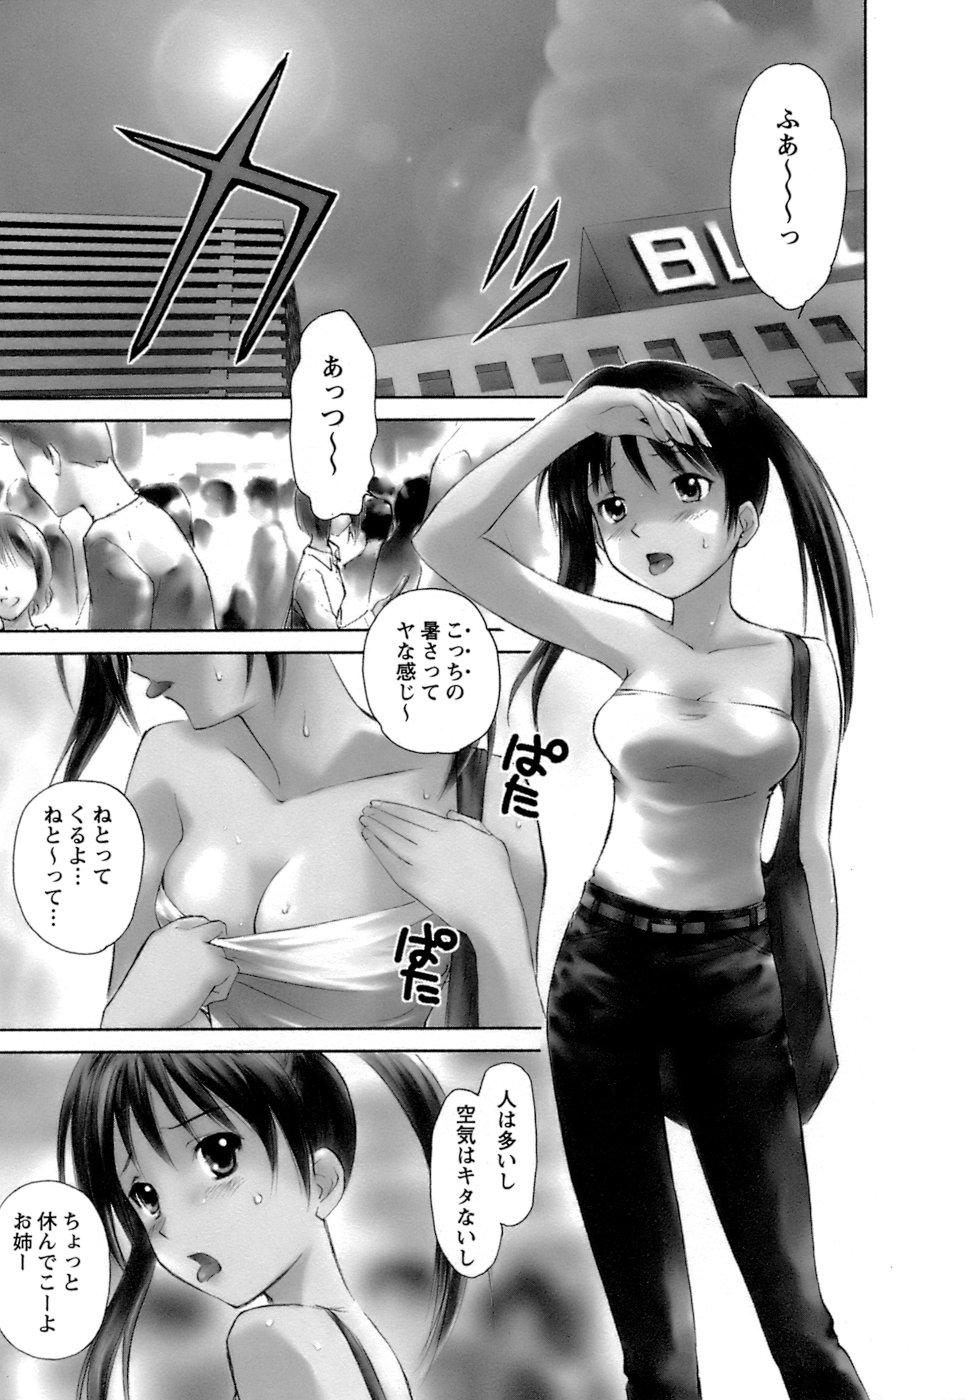  Kaikan Ondo n°C 1 Milf Sex - Page 6